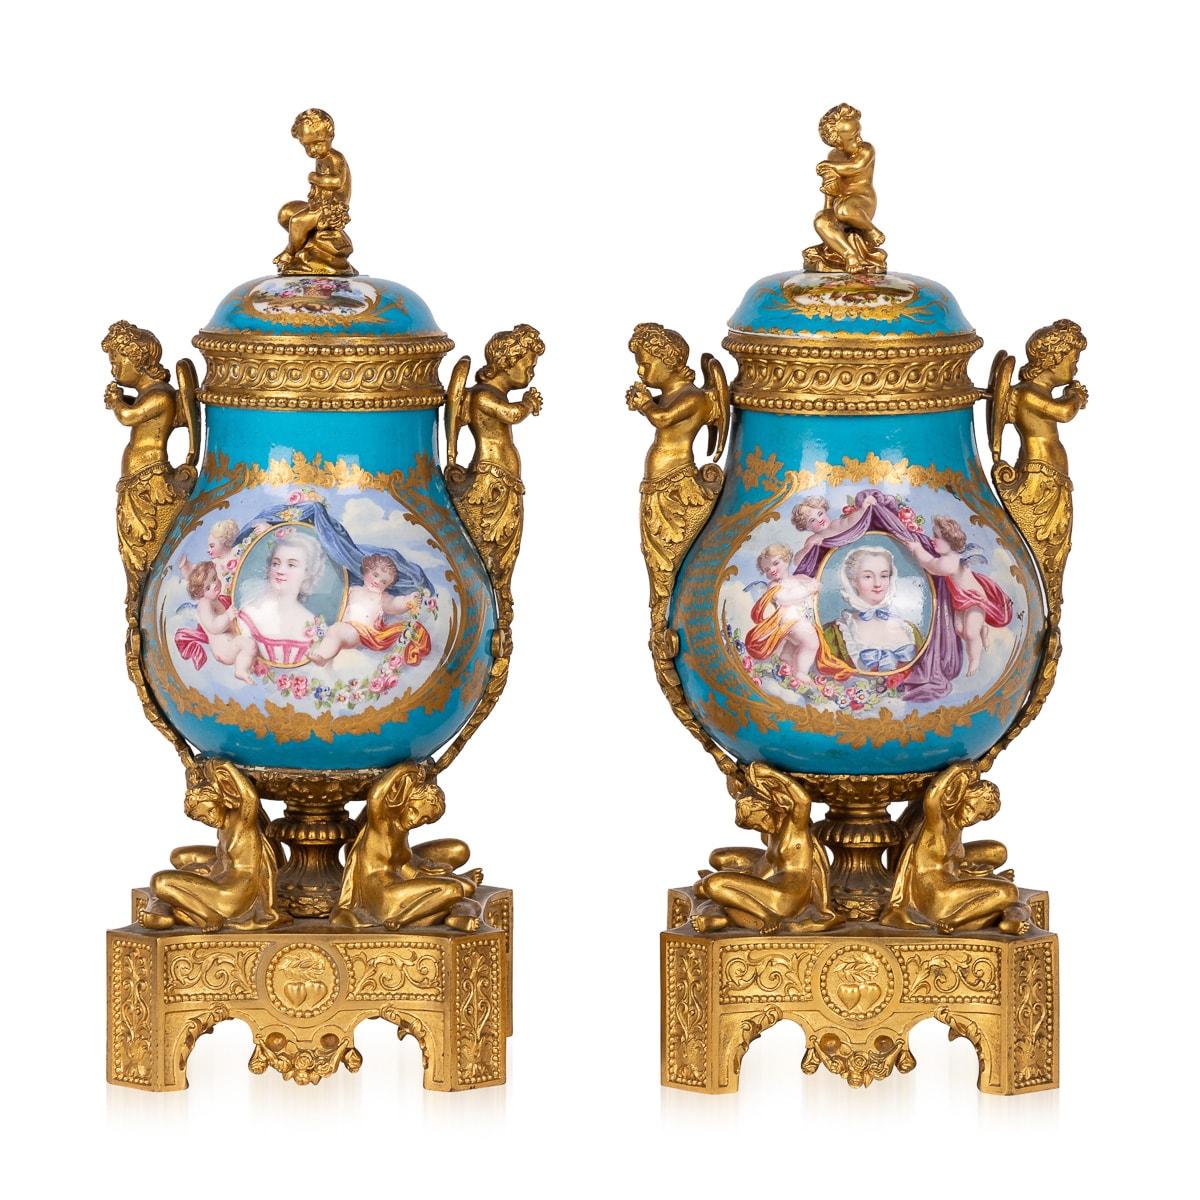 Antike Potpourri-Vasen aus französischem Porzellan des 19. Jahrhunderts, verziert mit Ormolu-Beschlägen im Sèvres-Stil. Jede Vase hat zwei anmutige Griffe in Form von Putten, die mit zarten Blumenmotiven verziert sind, die bis zum Boden herabfallen.